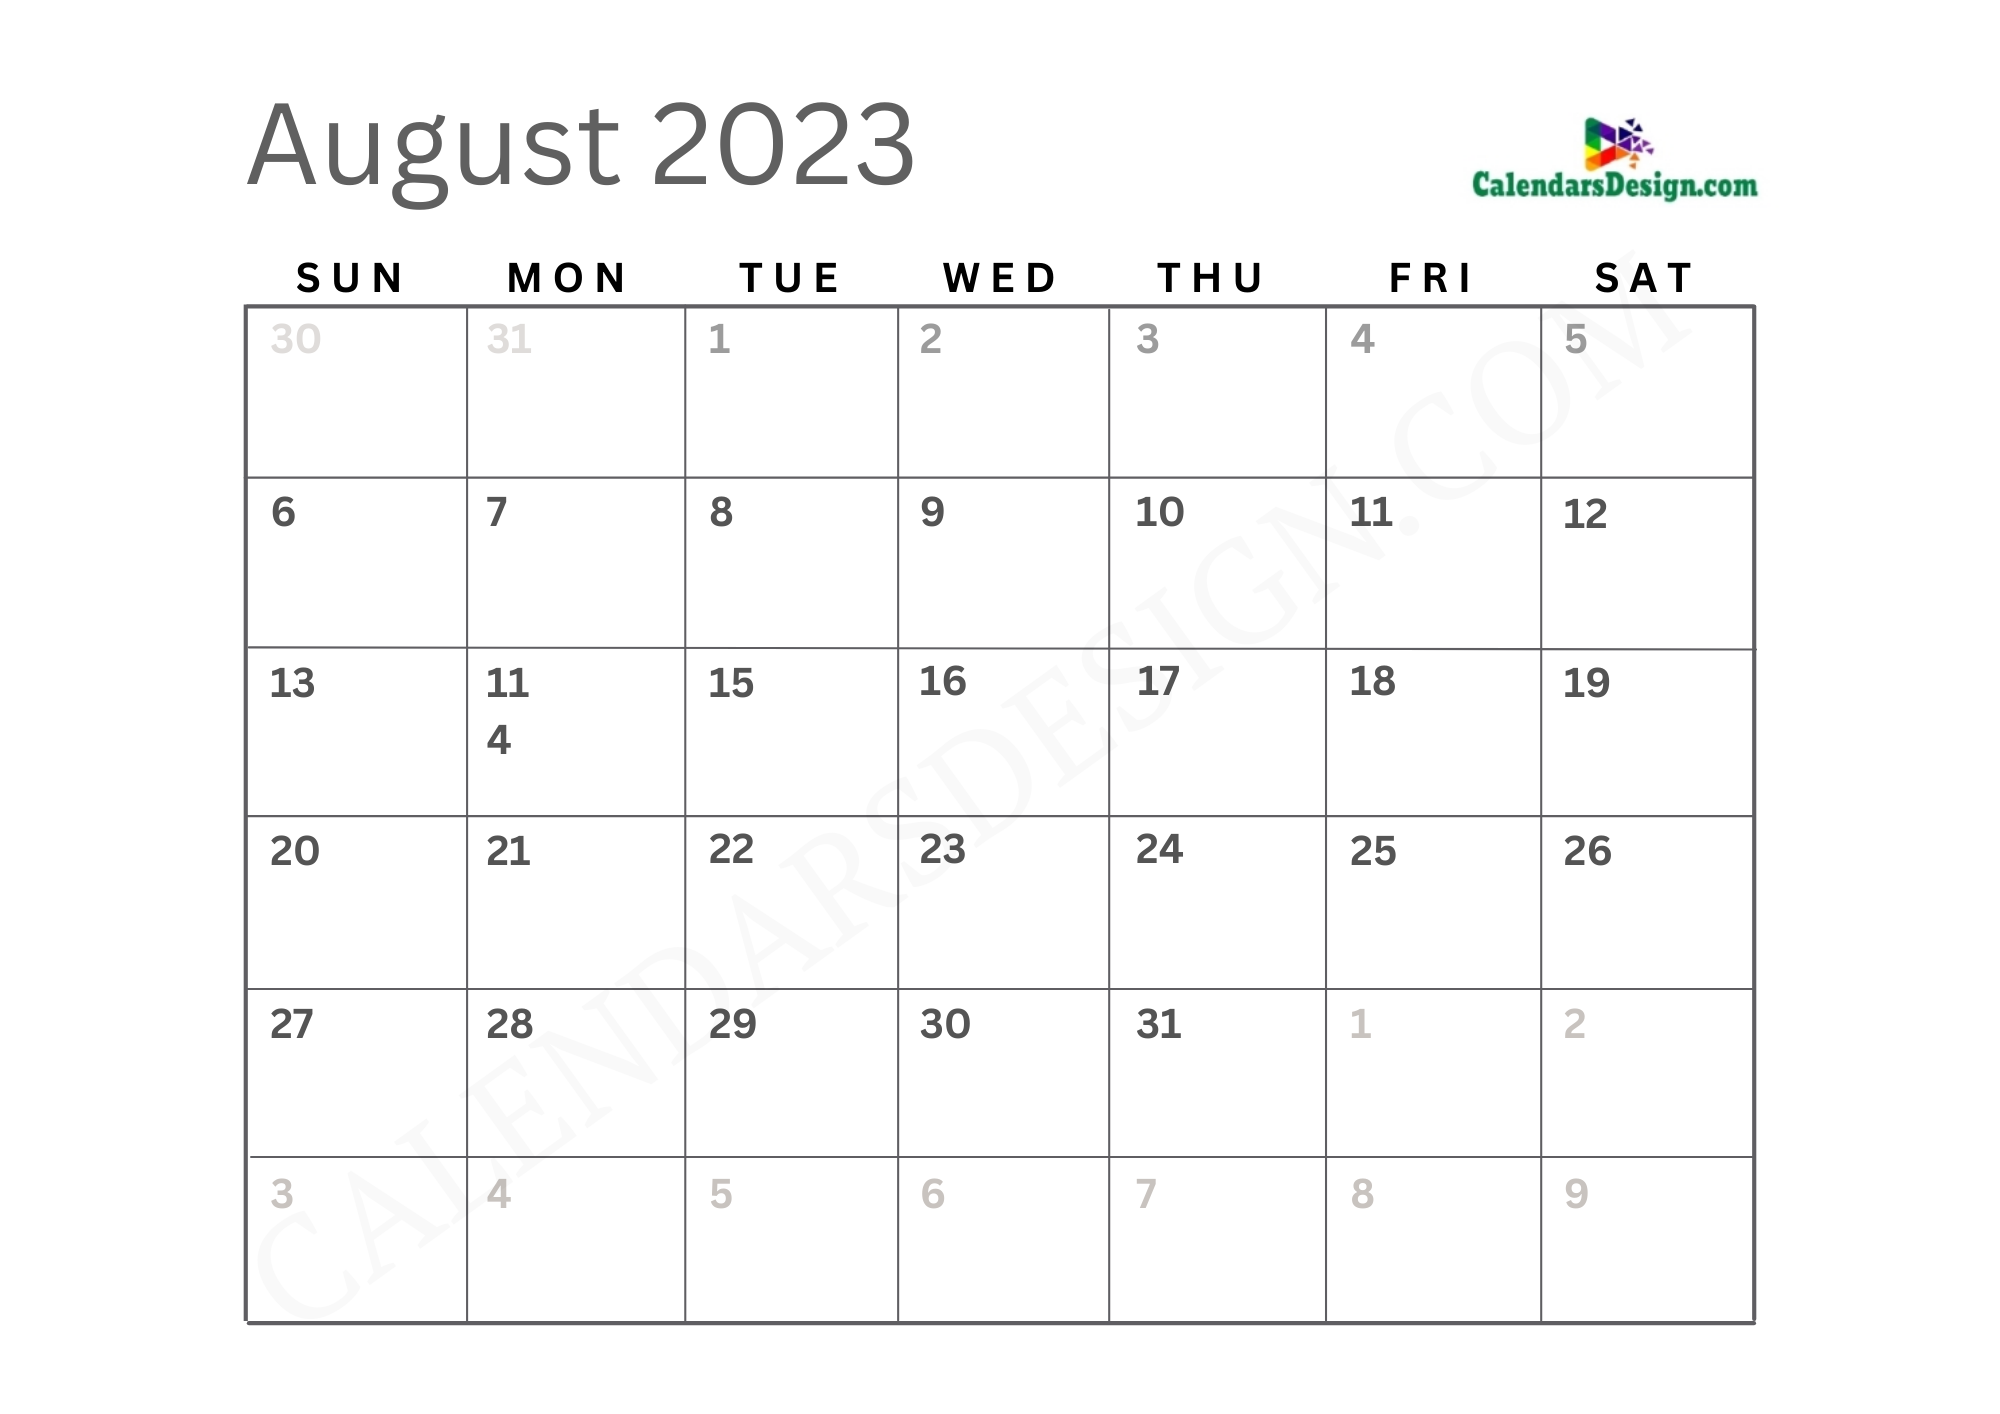 August 2023 calendar jpg